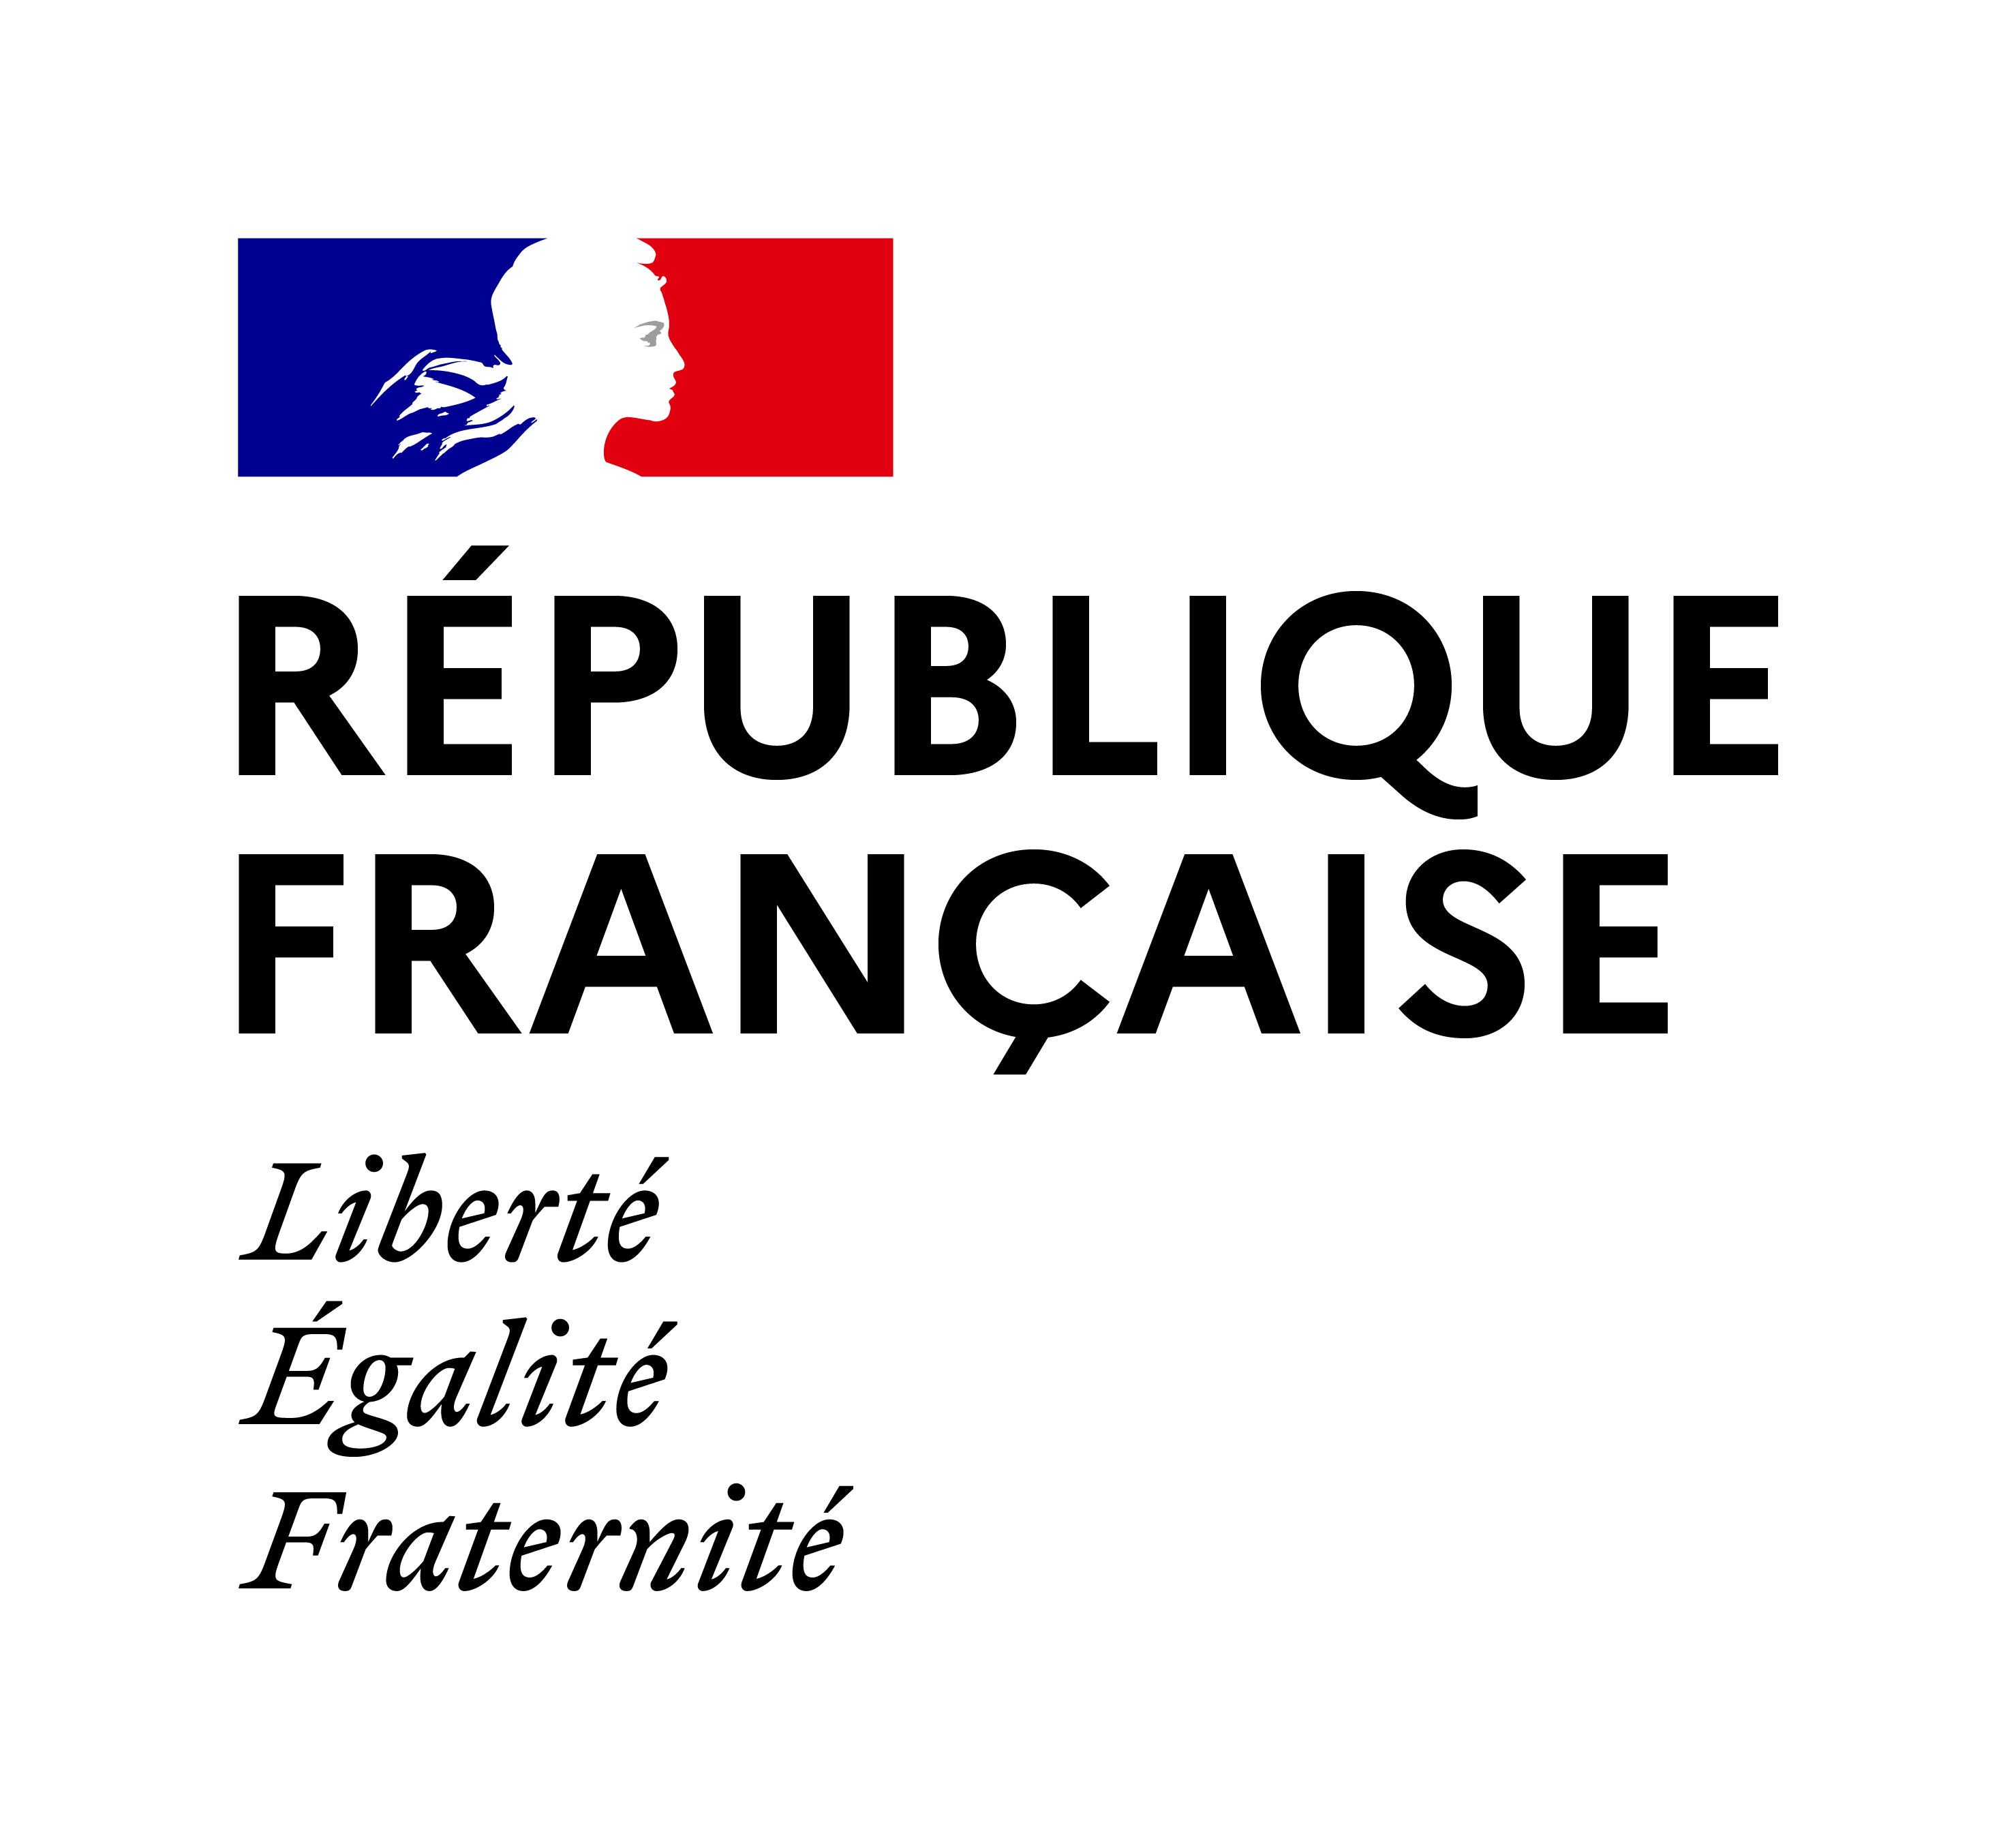 Republique_Francaise_RVB.png